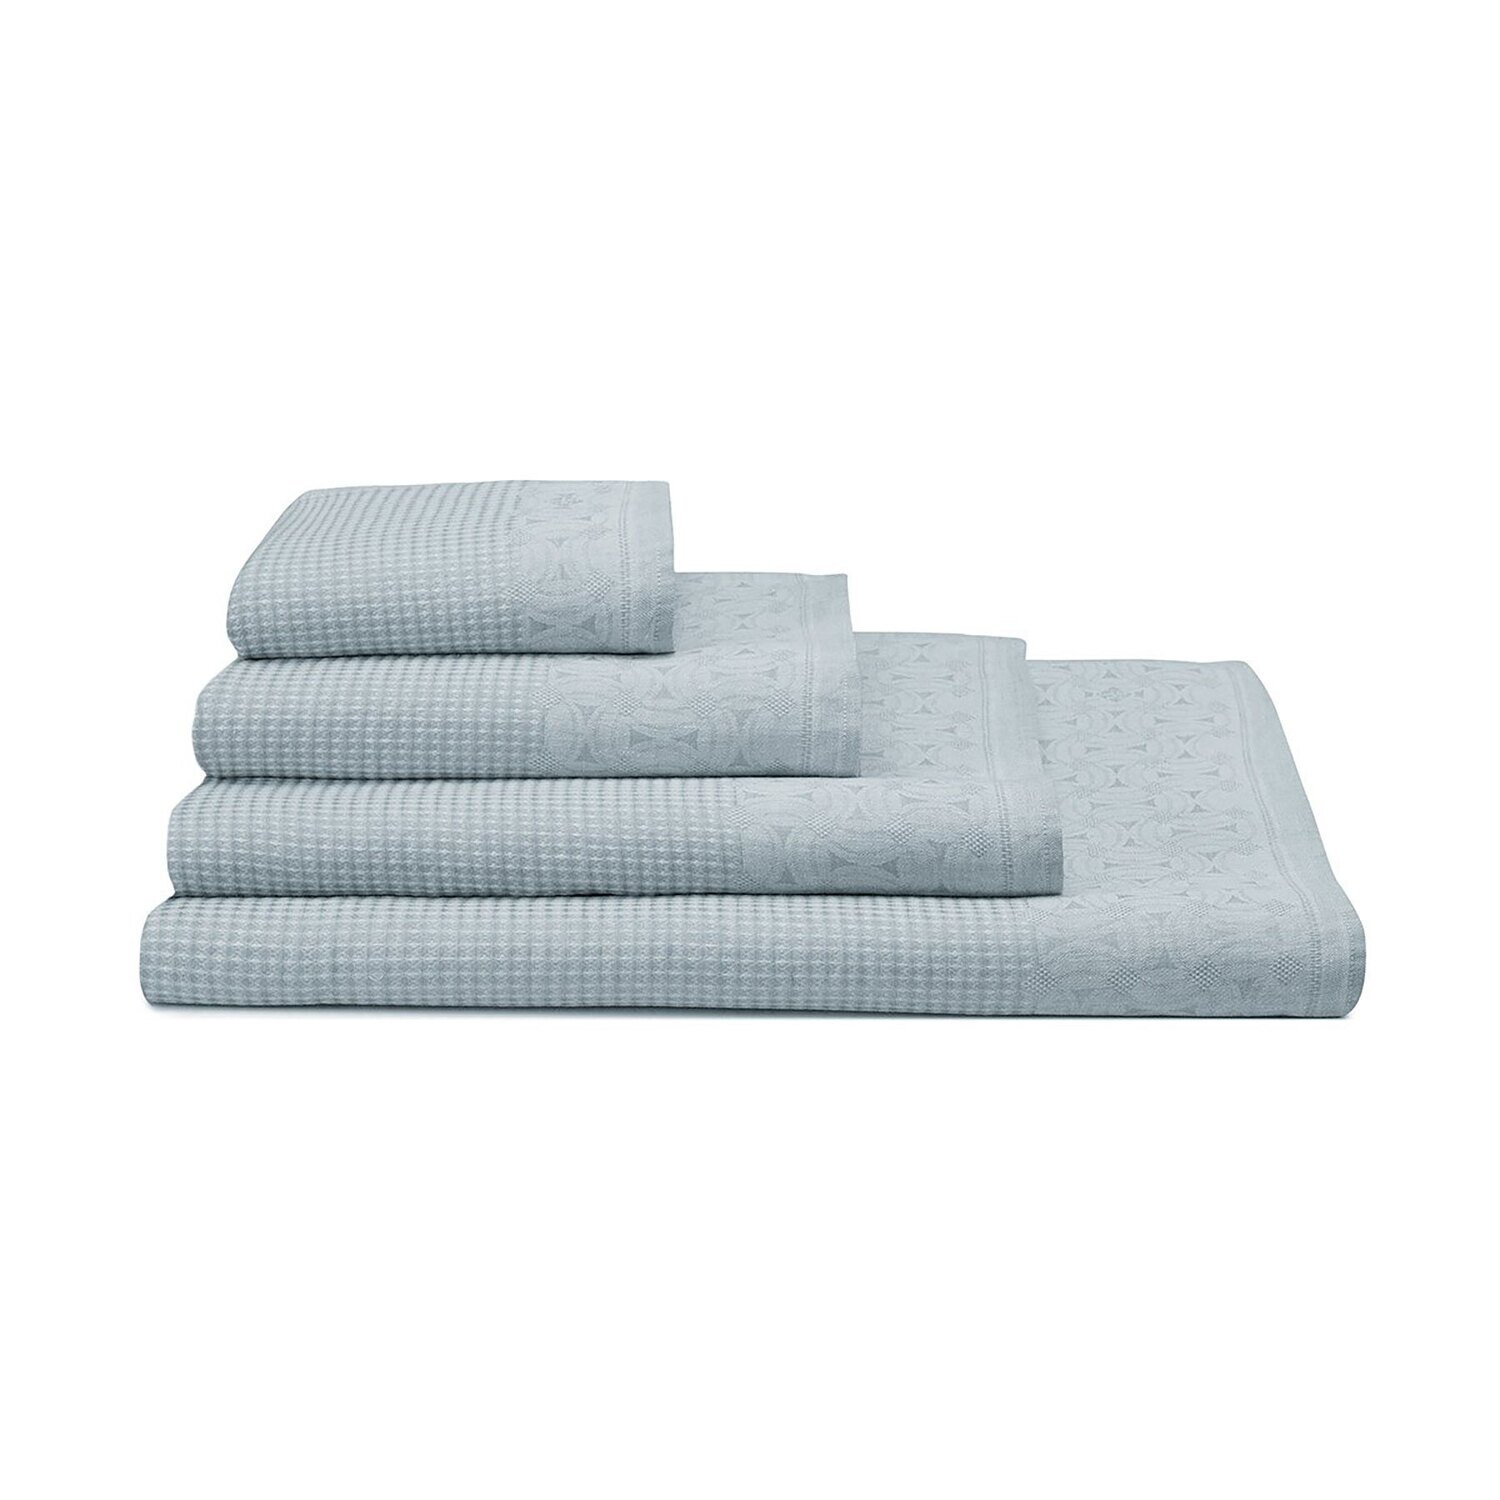 Le Jacquard Francais Guest Towel Lula Blue Ice 100% Linen 26895 Set of 4